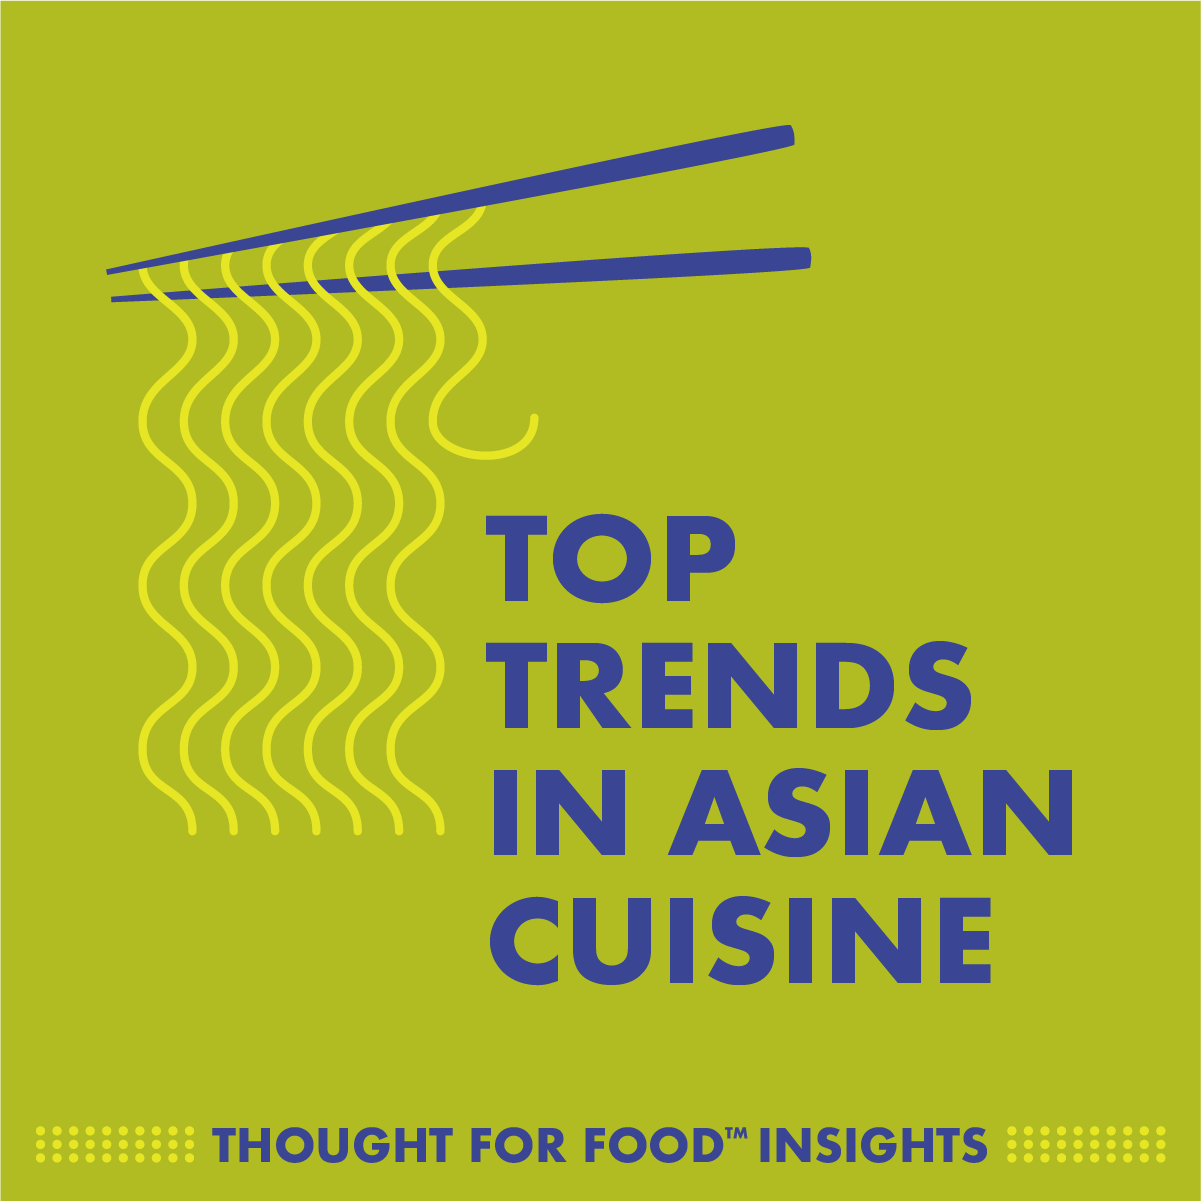 Top trends in Asian cuisine